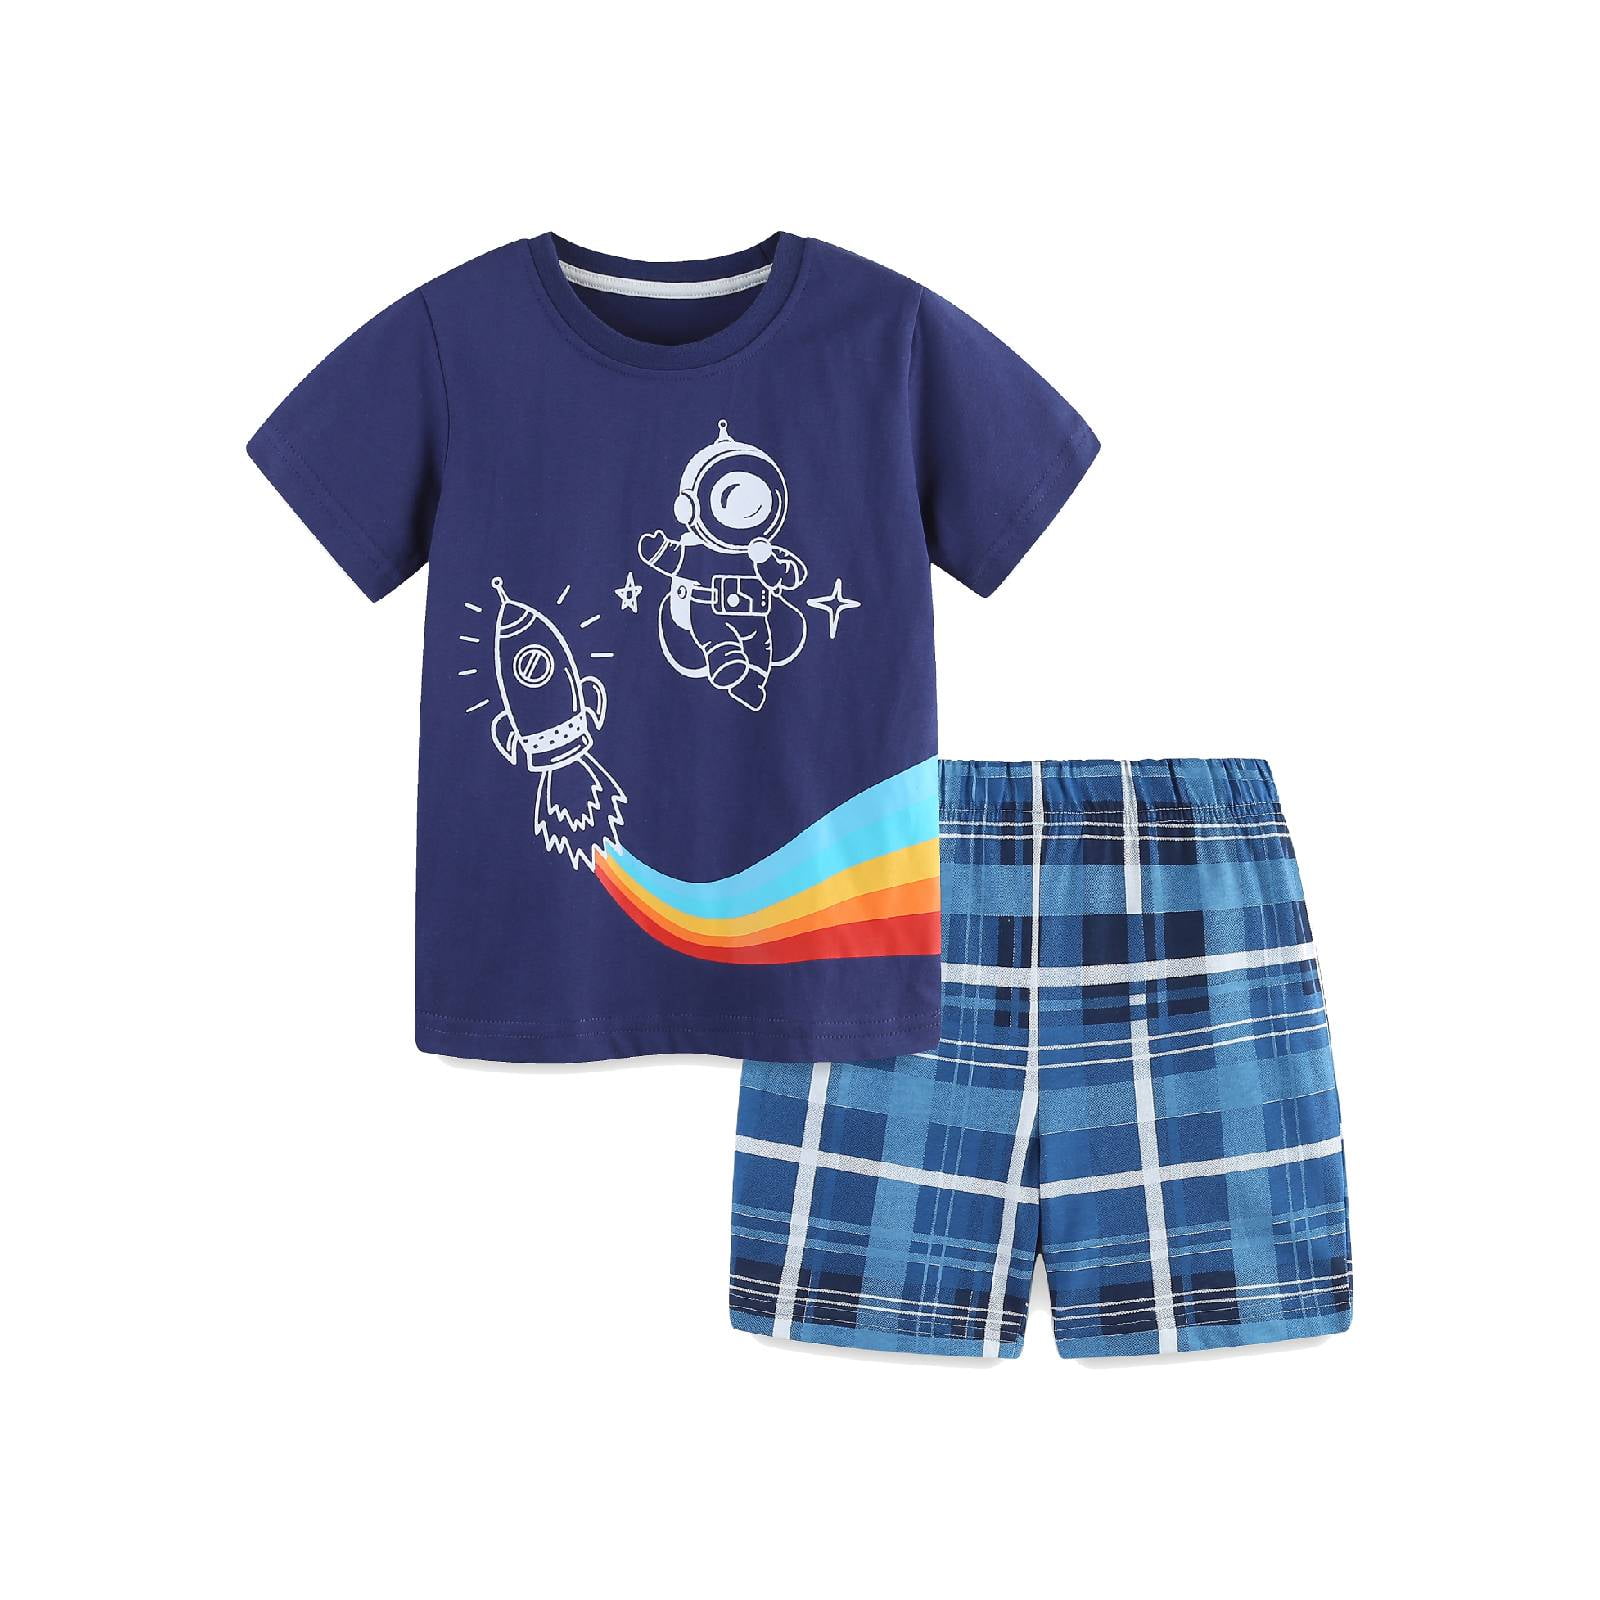 HILEELANG Little Boy Summer Short Sets Outfits Cotton CrewNeck Navy ...